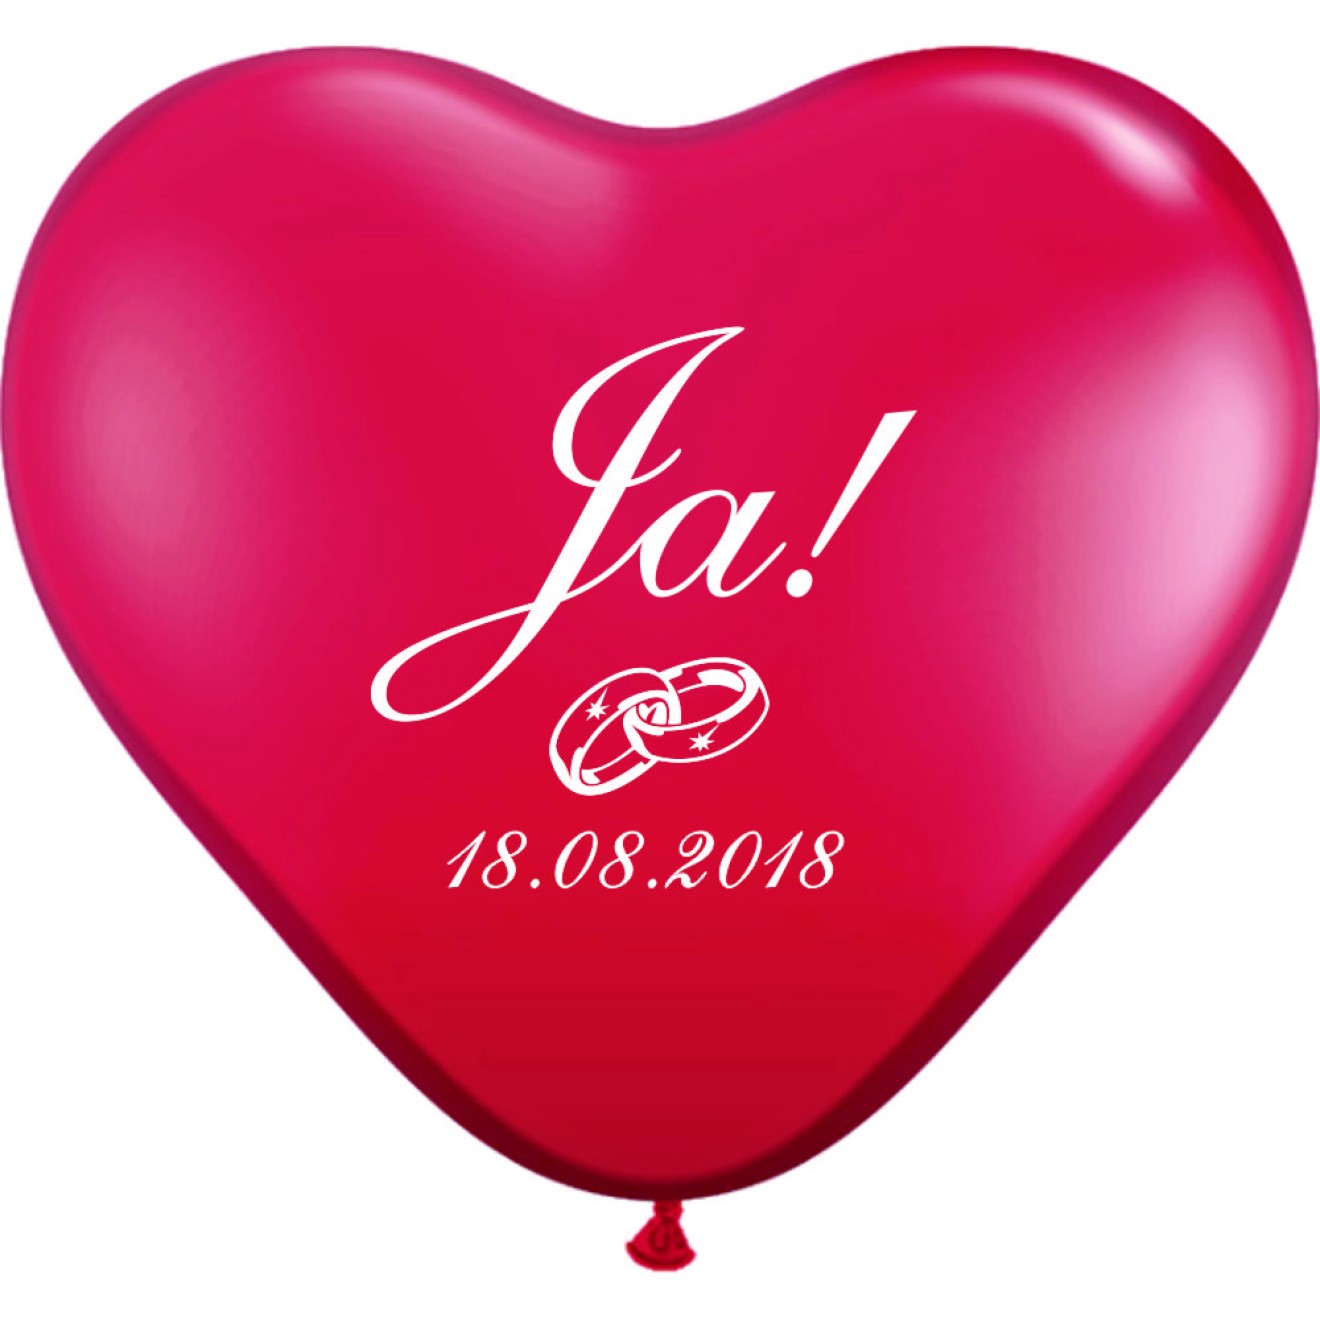 Herzluftballons bedrucken Ja!, Ringe & Datum - Preis ab 50 Stück